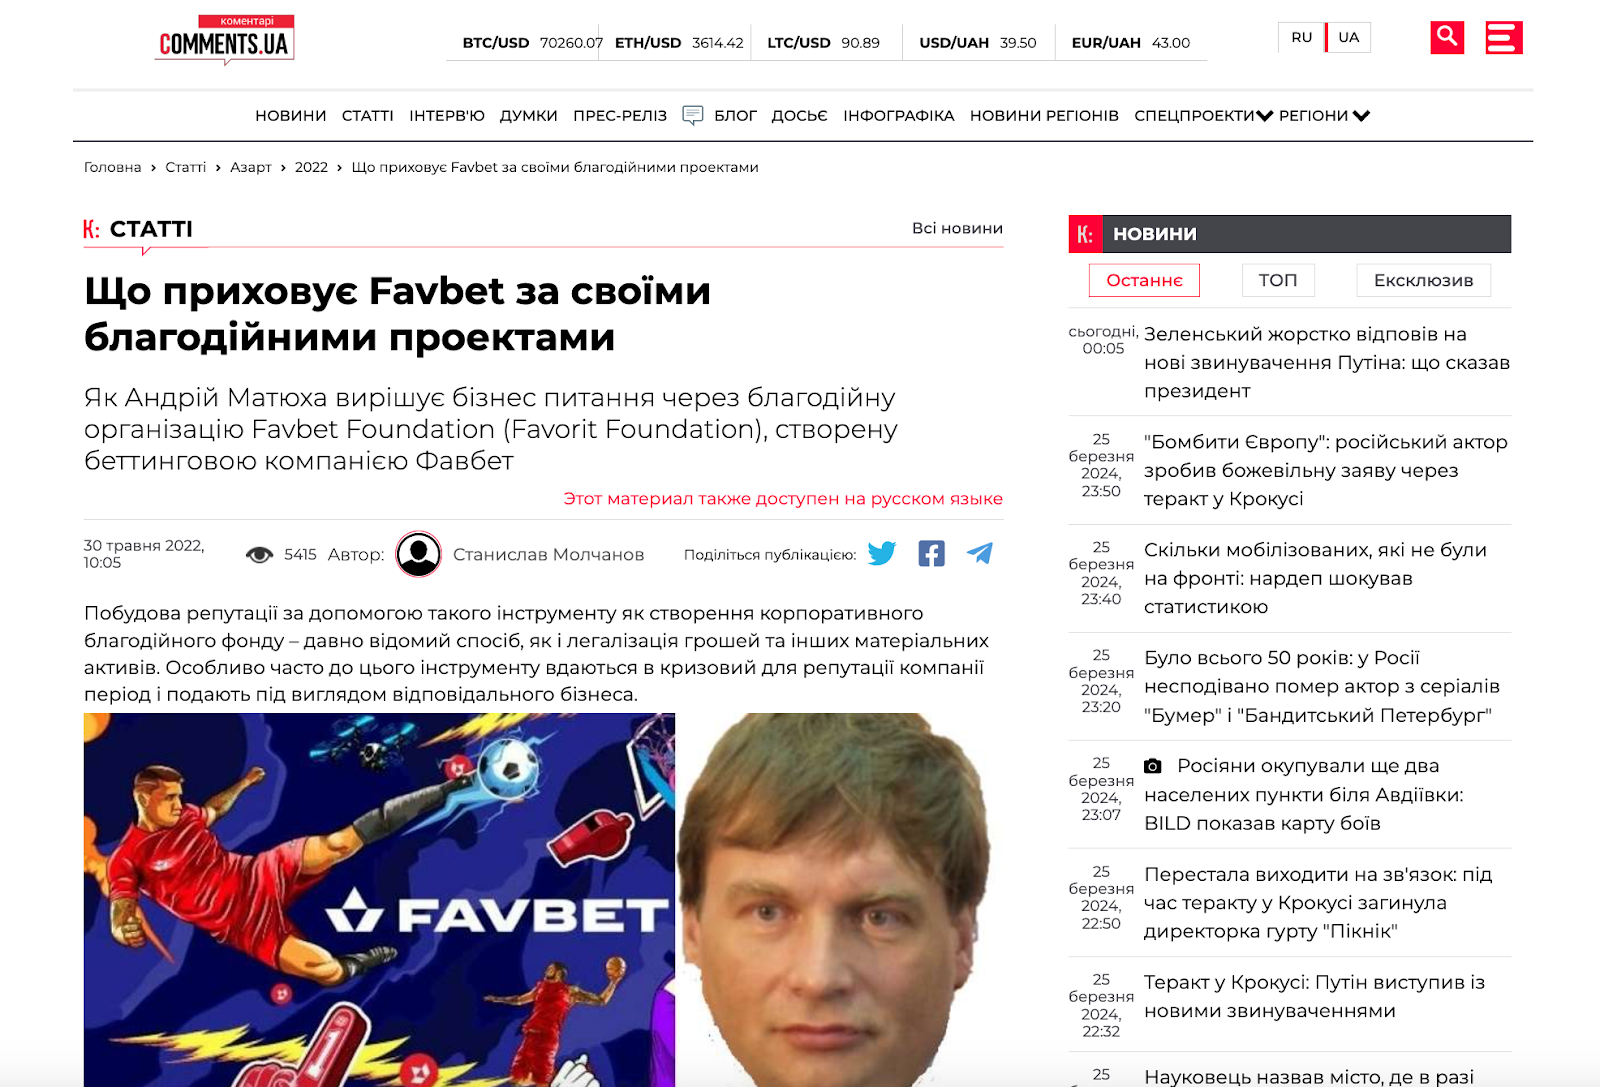 Чи правда, що “Favbet щось приховує за своїми благодійними проектами” стаття Comments.ua Фейк